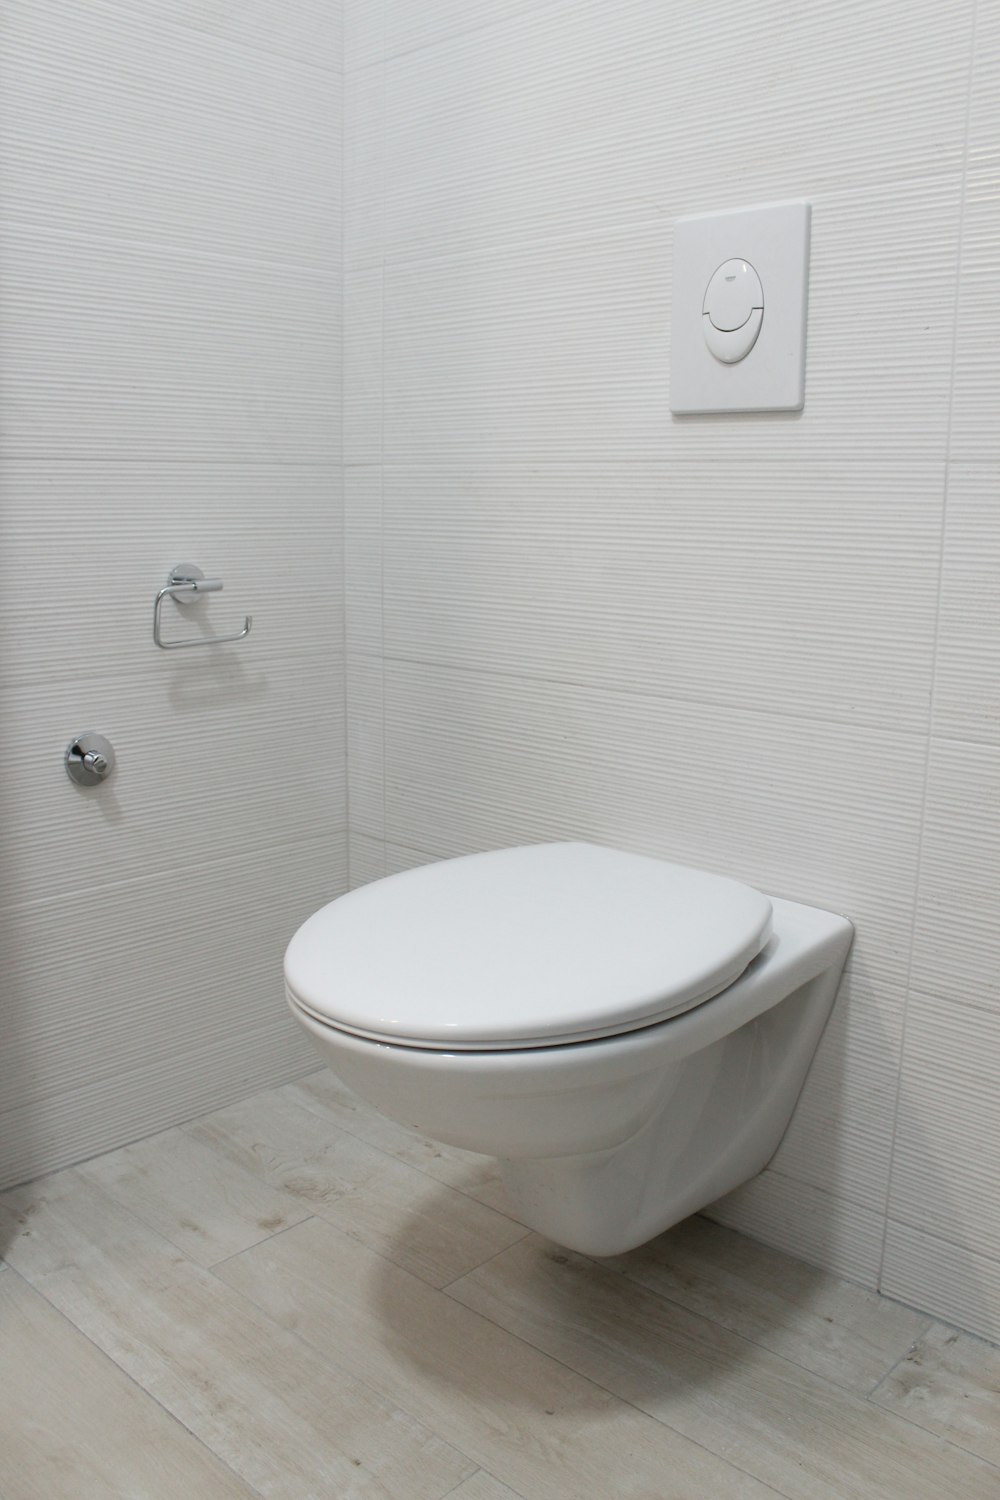 hangen Vijfde Kwestie Toilet Seat Pictures | Download Free Images on Unsplash